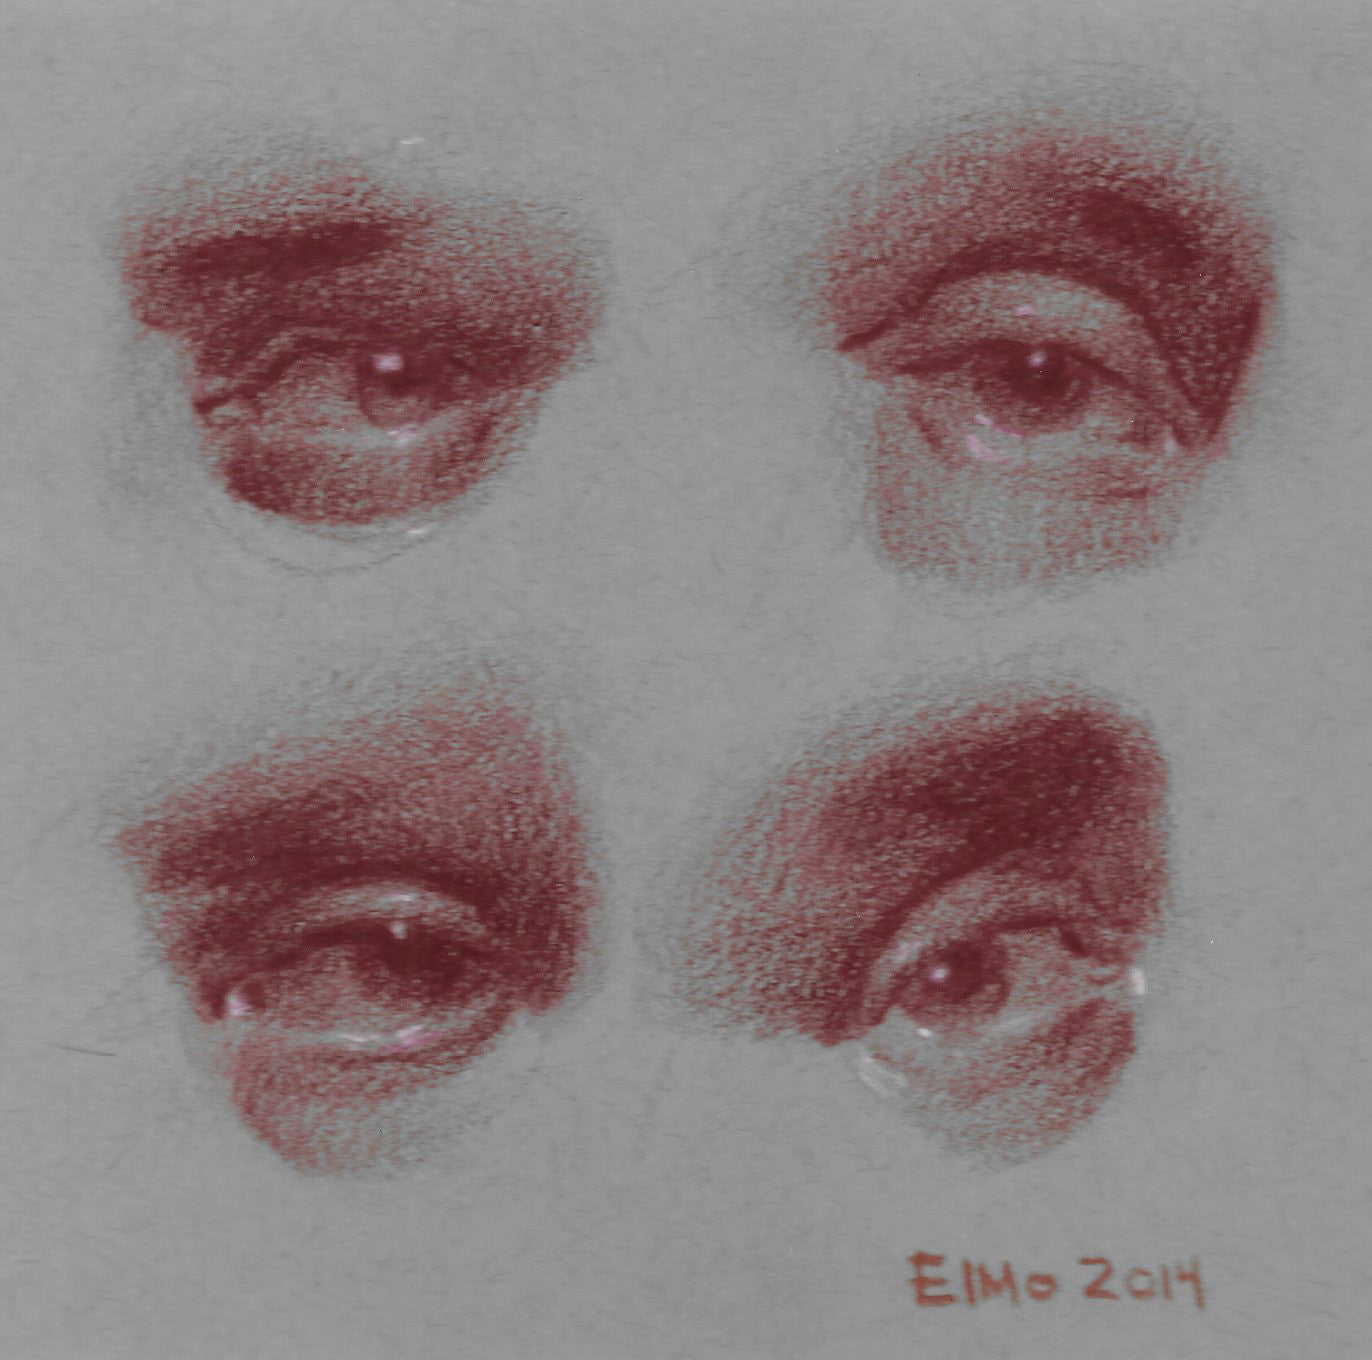 Four Eyes (2)